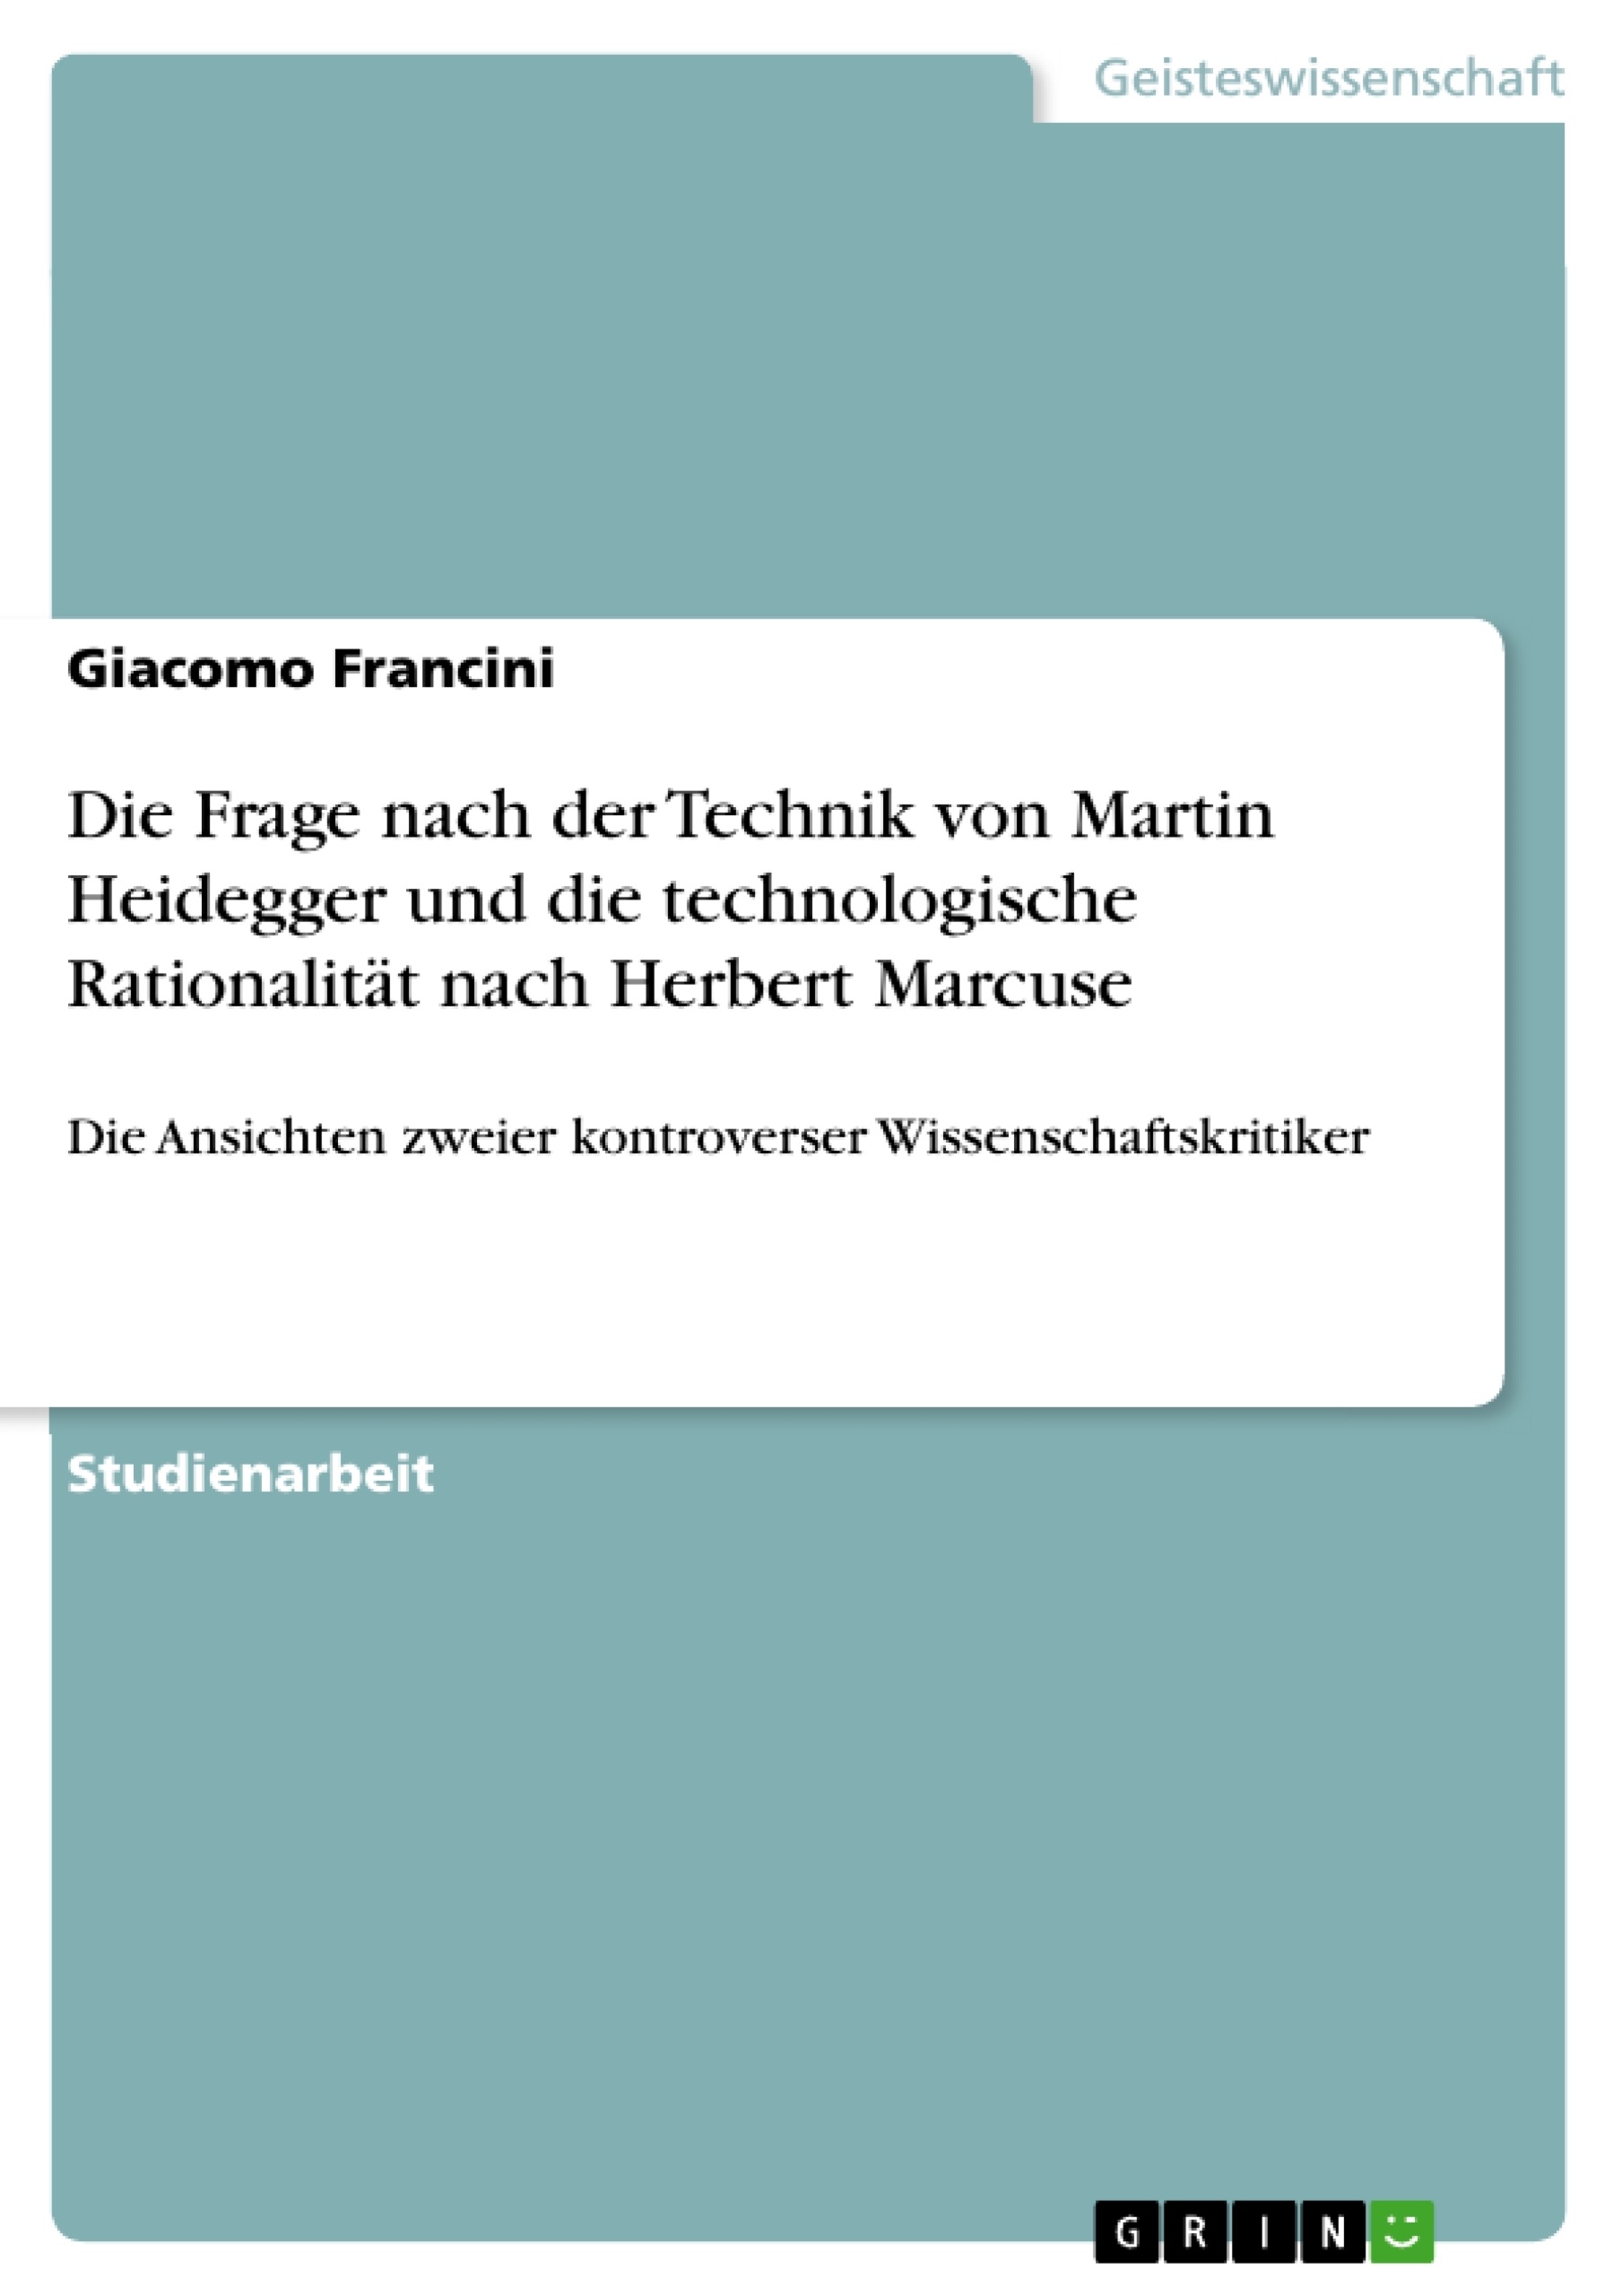 Título: Die Frage nach der Technik von Martin Heidegger und die technologische Rationalität nach Herbert Marcuse